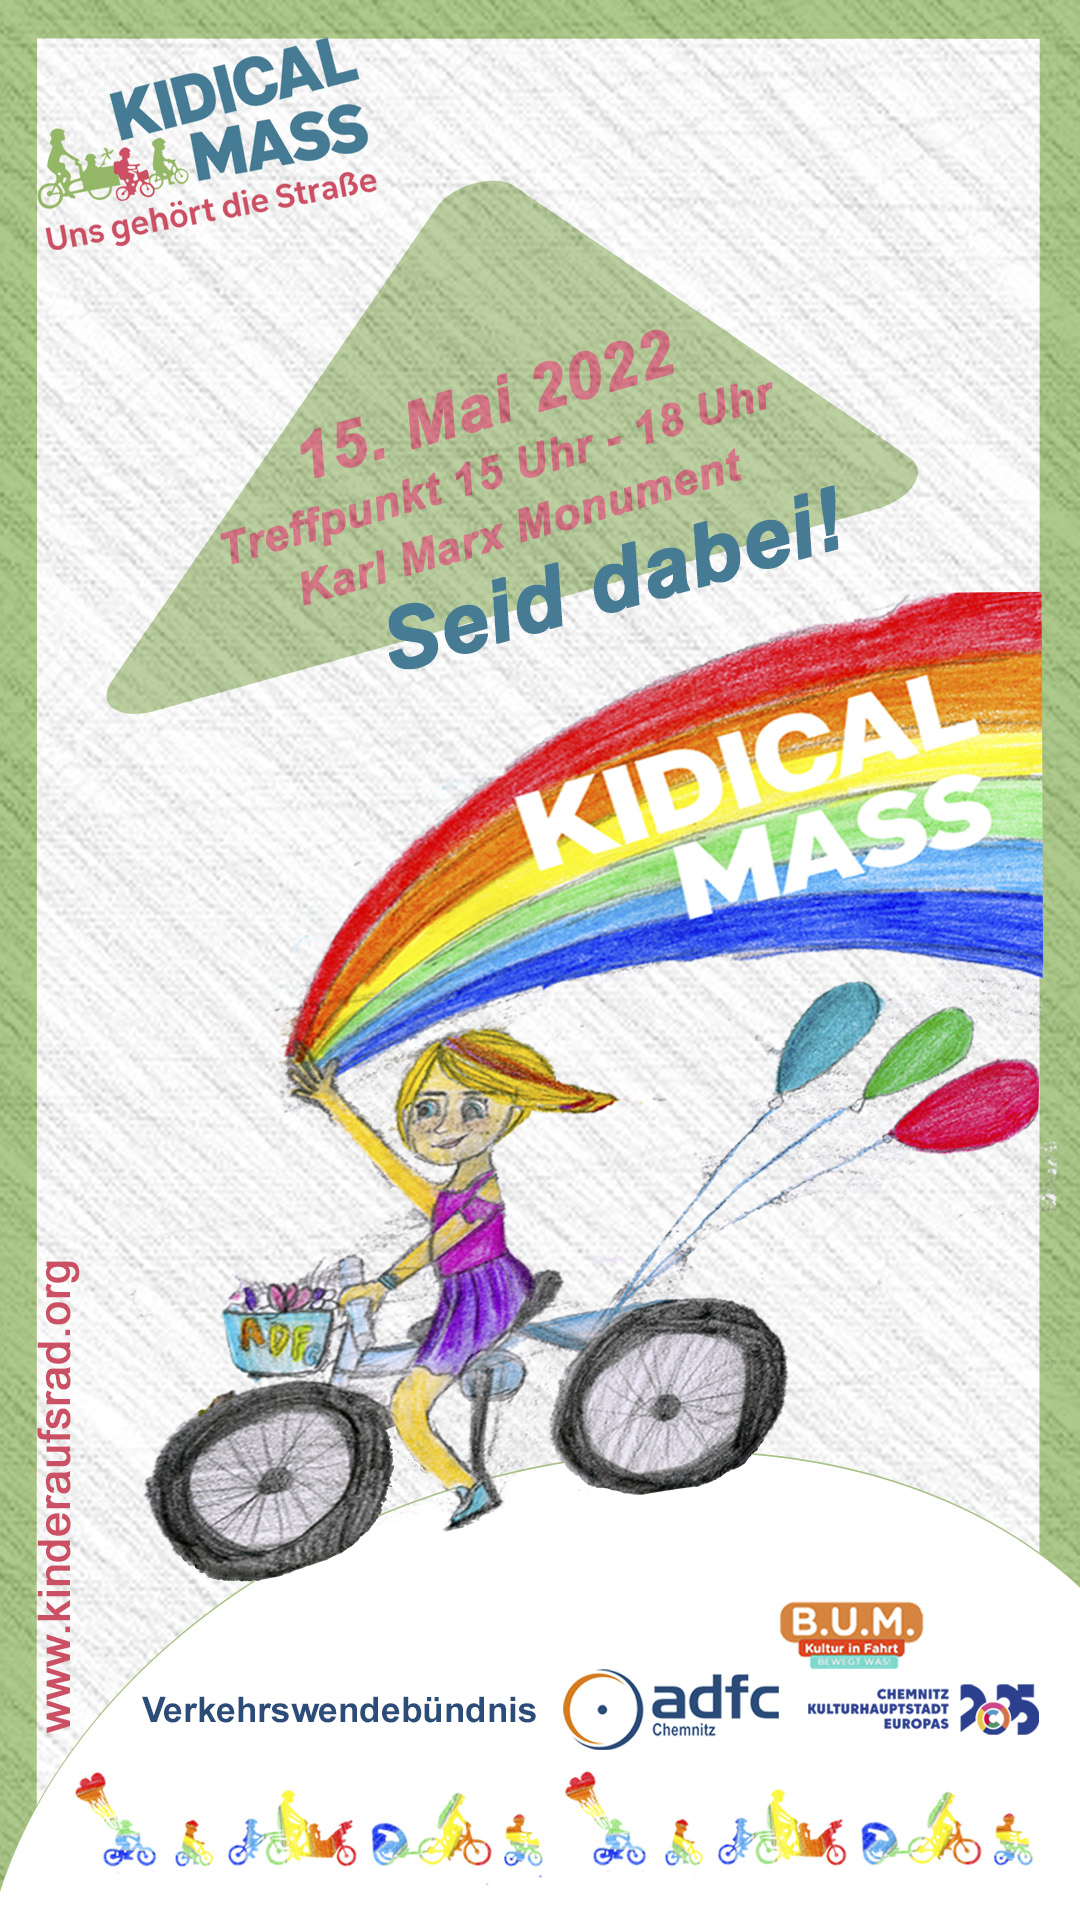 kidical